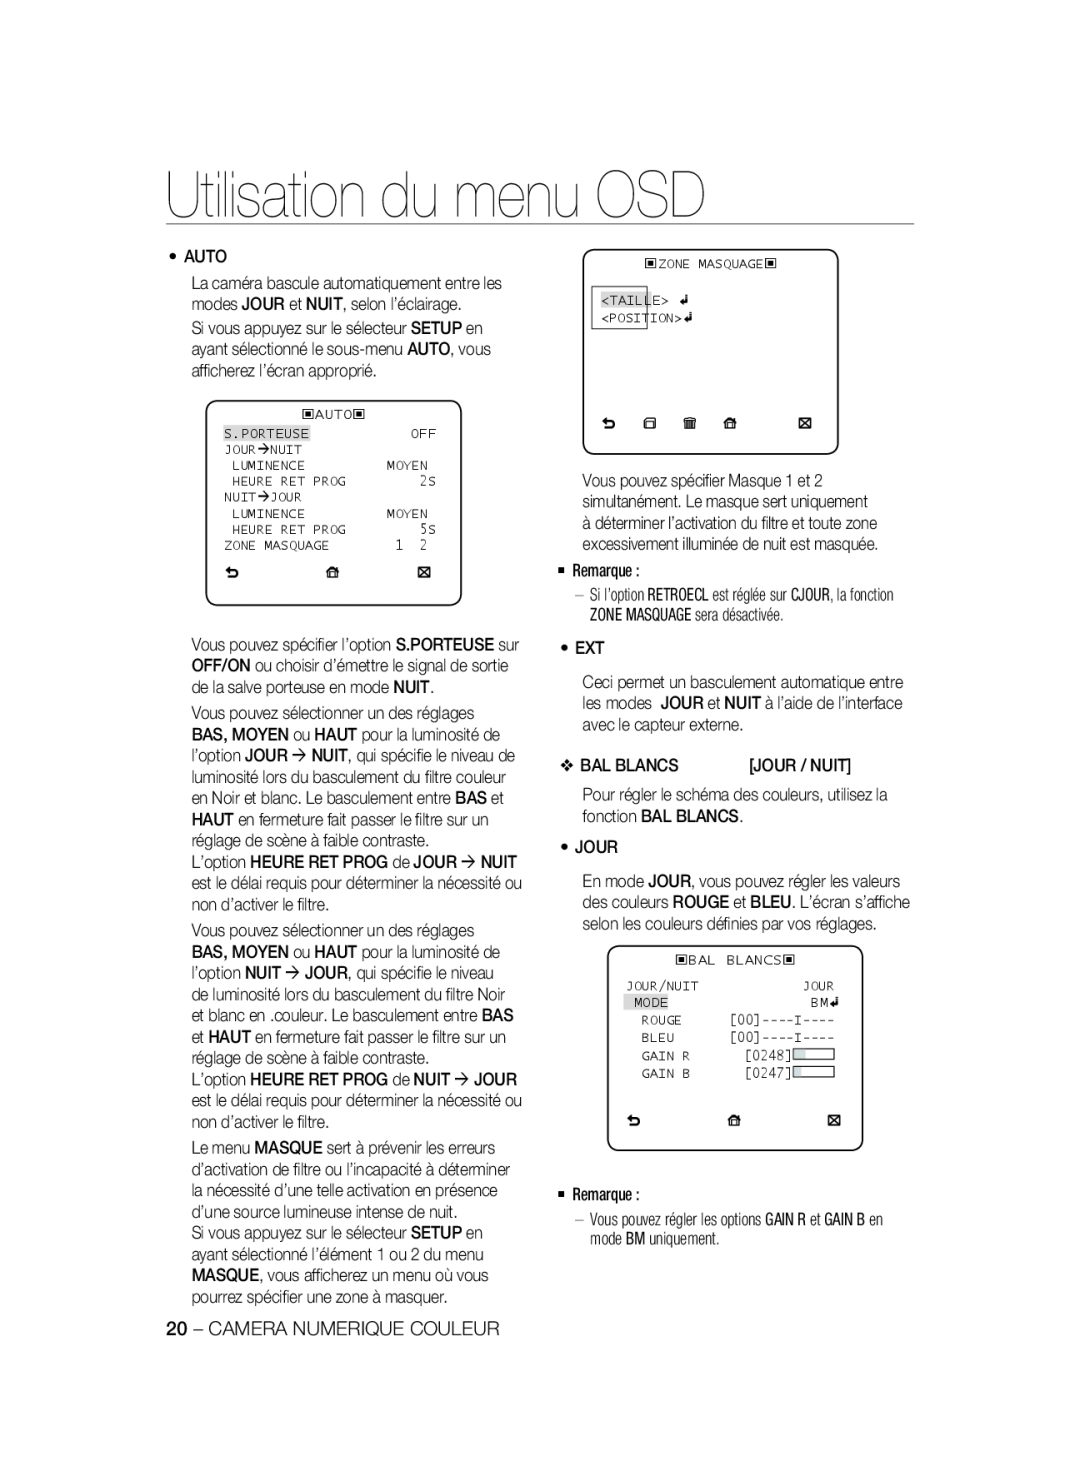 Samsung SCC-B2337P manual Utilisation du menu OSD, Vous pouvez régler les options GAIN R et GAIN B en mode BM uniquement 